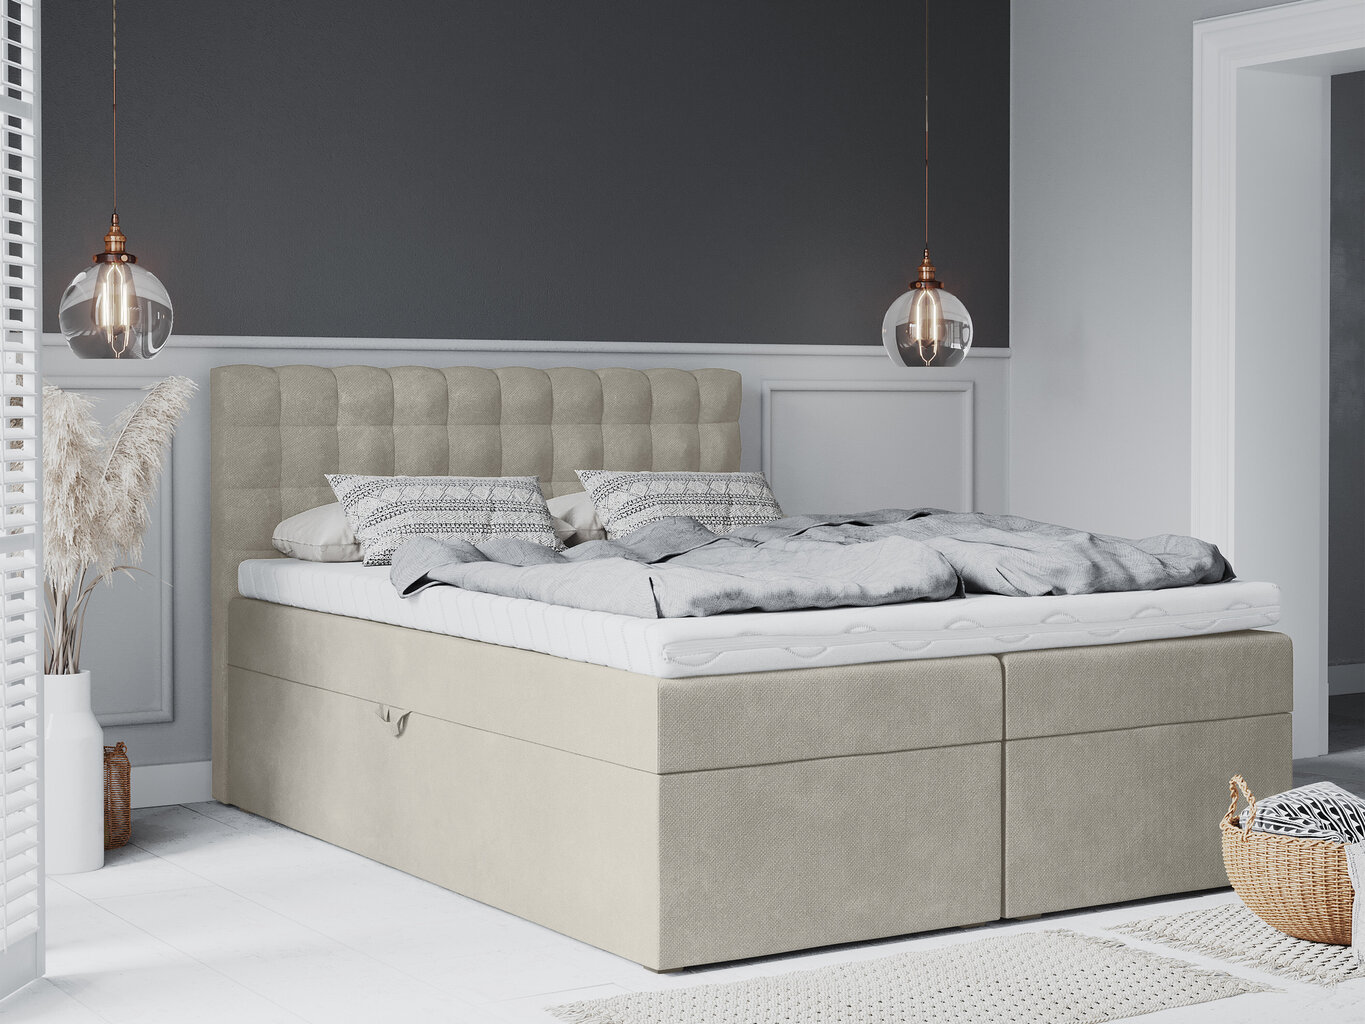 Lova Mazzini Beds Jade 140x200 cm, smėlio spalvos kaina ir informacija | Lovos | pigu.lt